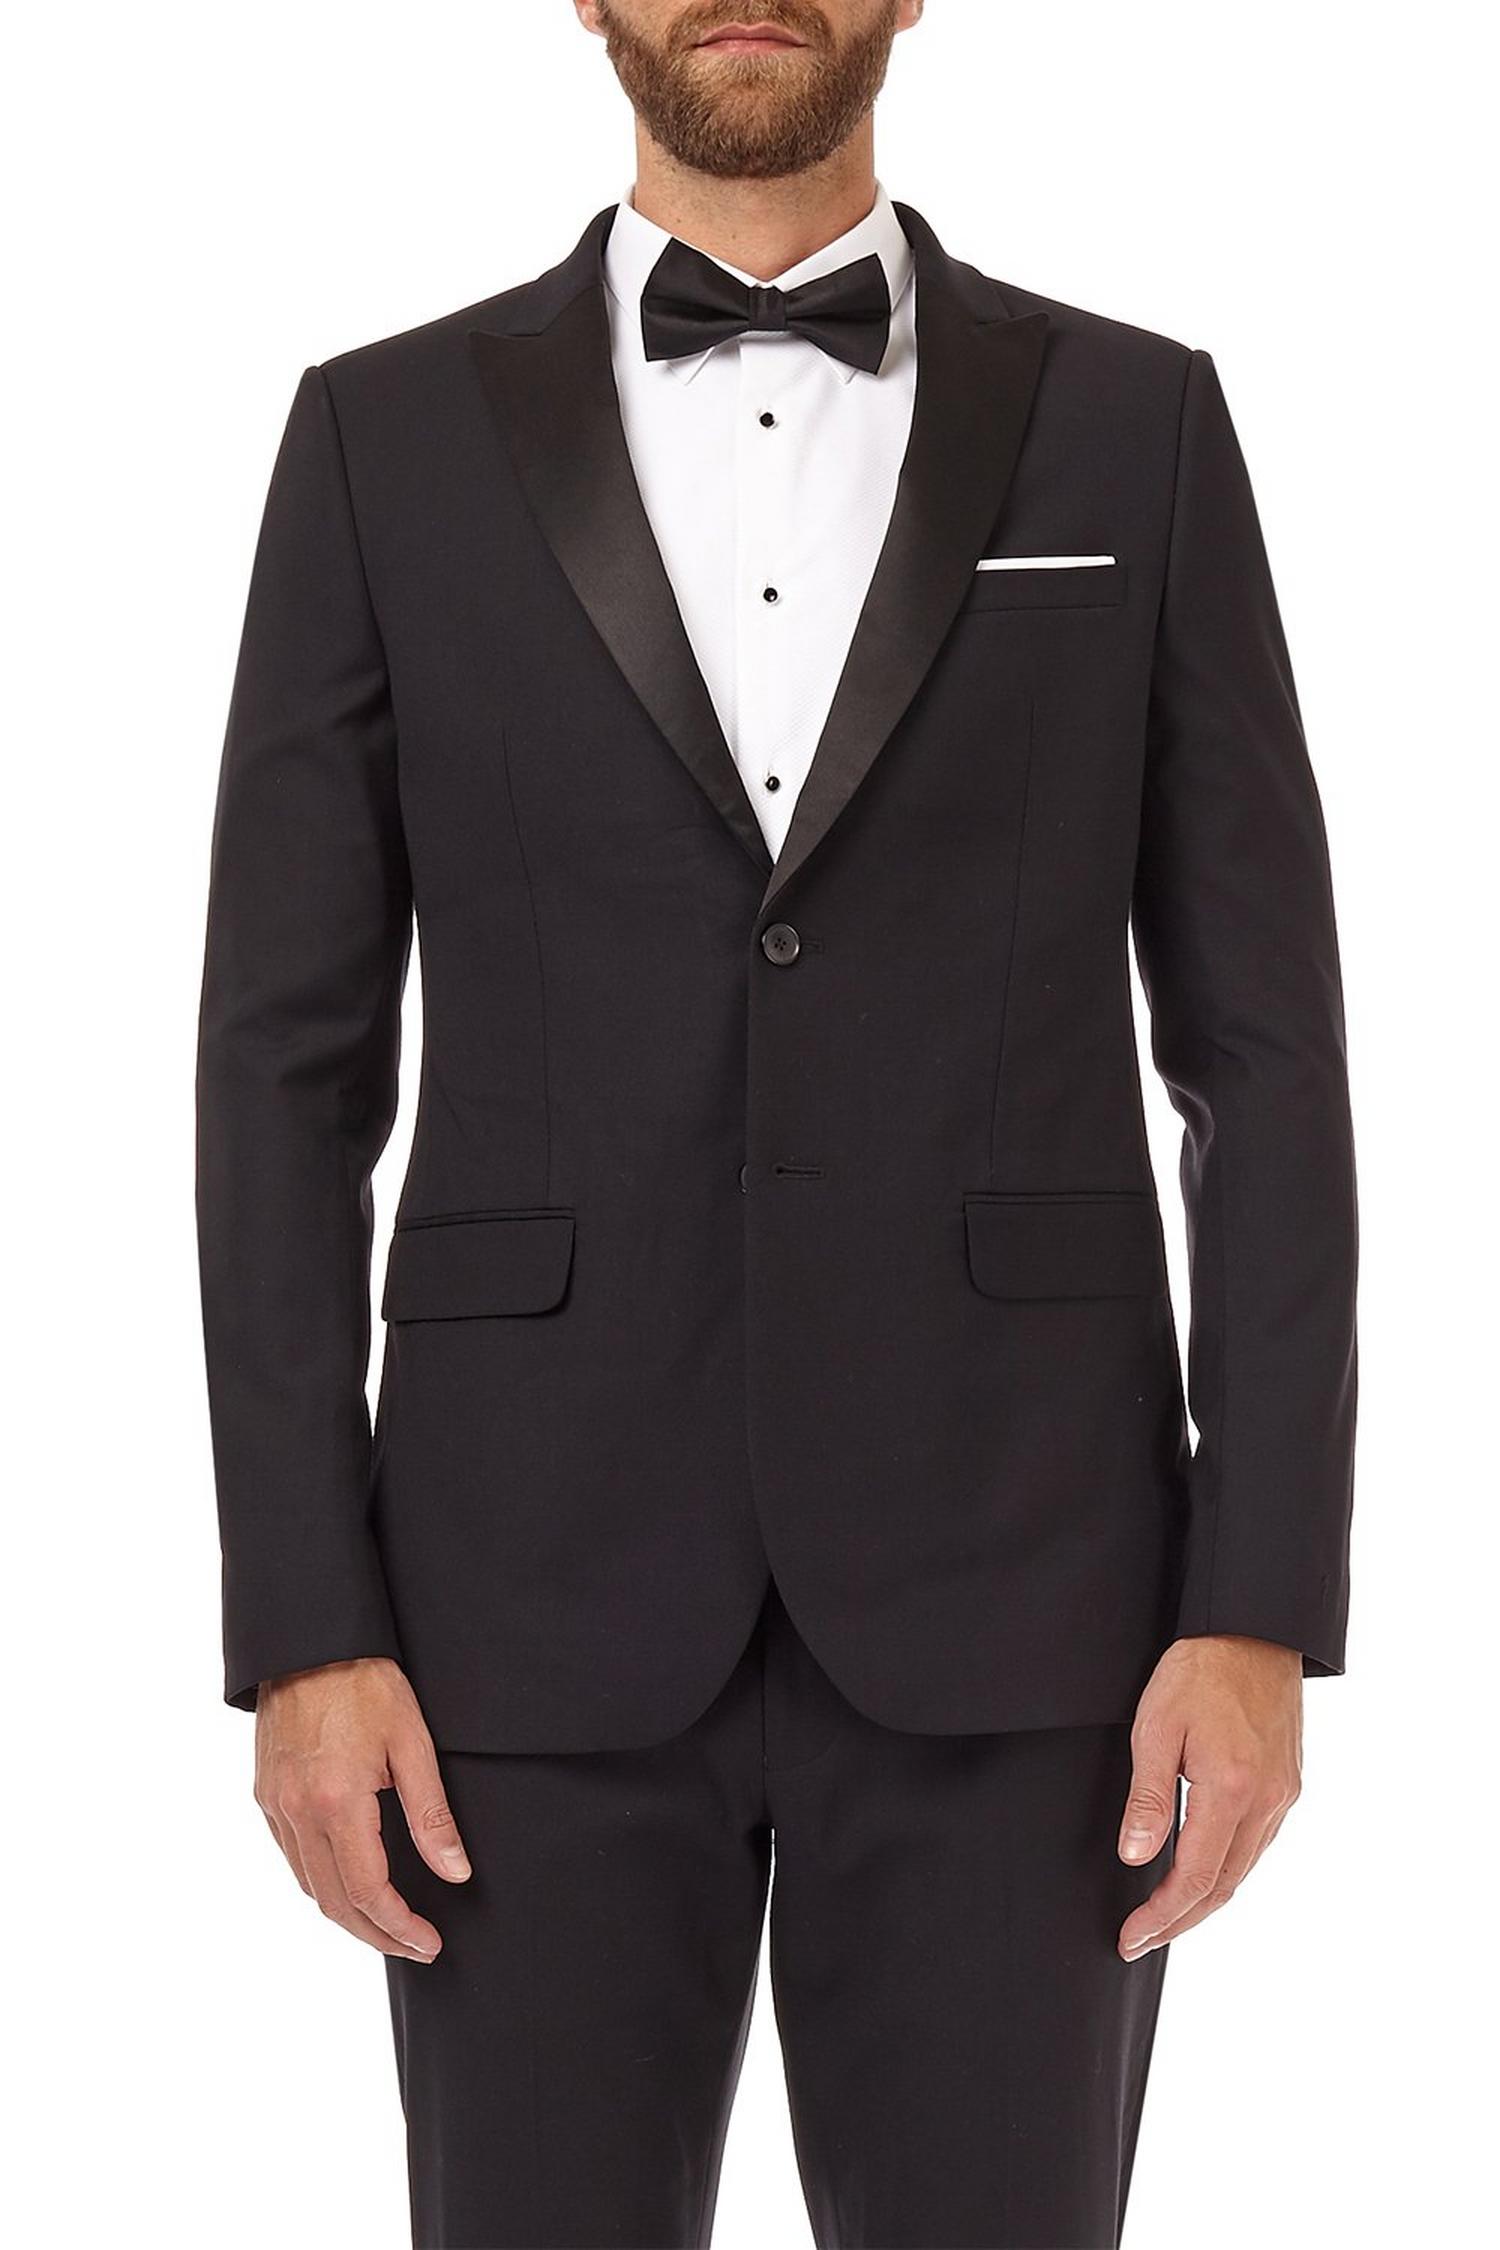 Black stretch tuxedo skinny fit suit jacket | Burton UK